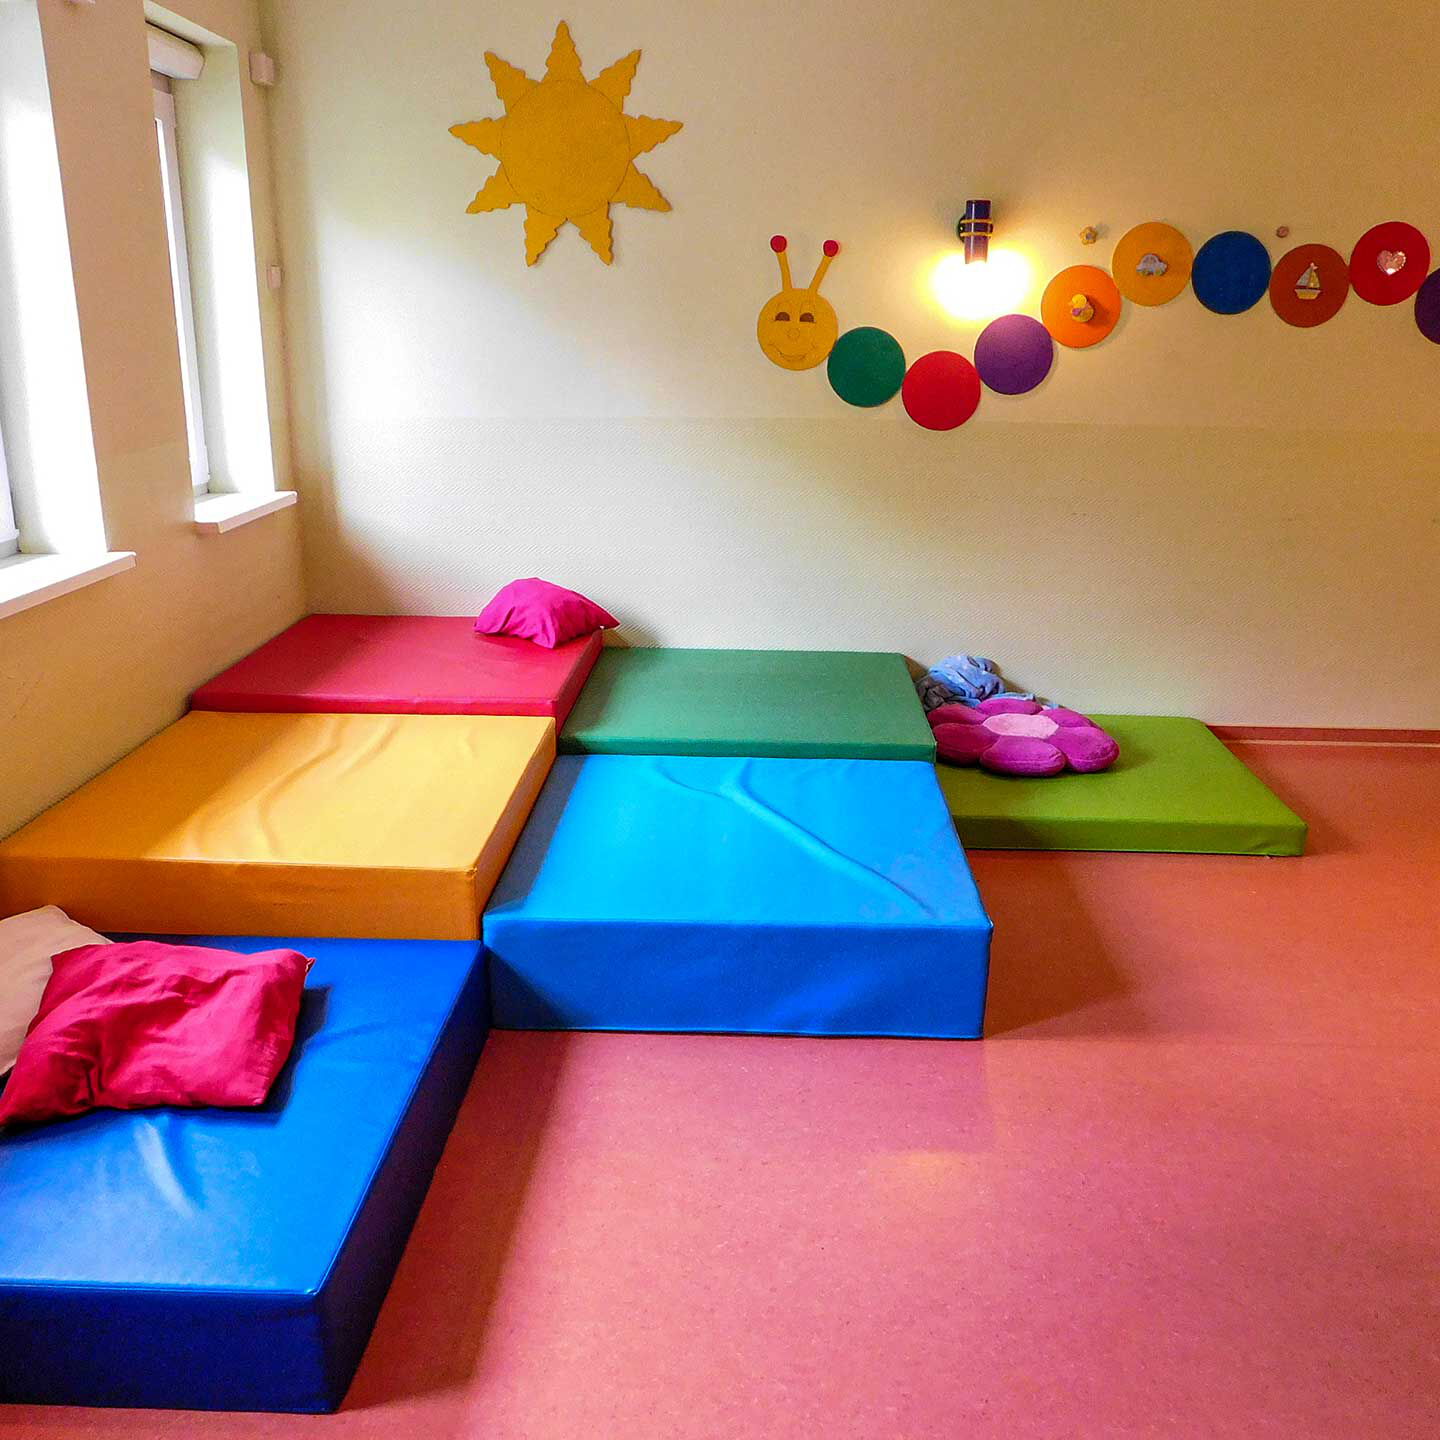 Eine Kuschelecke mit vielen weichen Matratzen und Kissen. An der Wand hängt eine Sonne und Raupe.